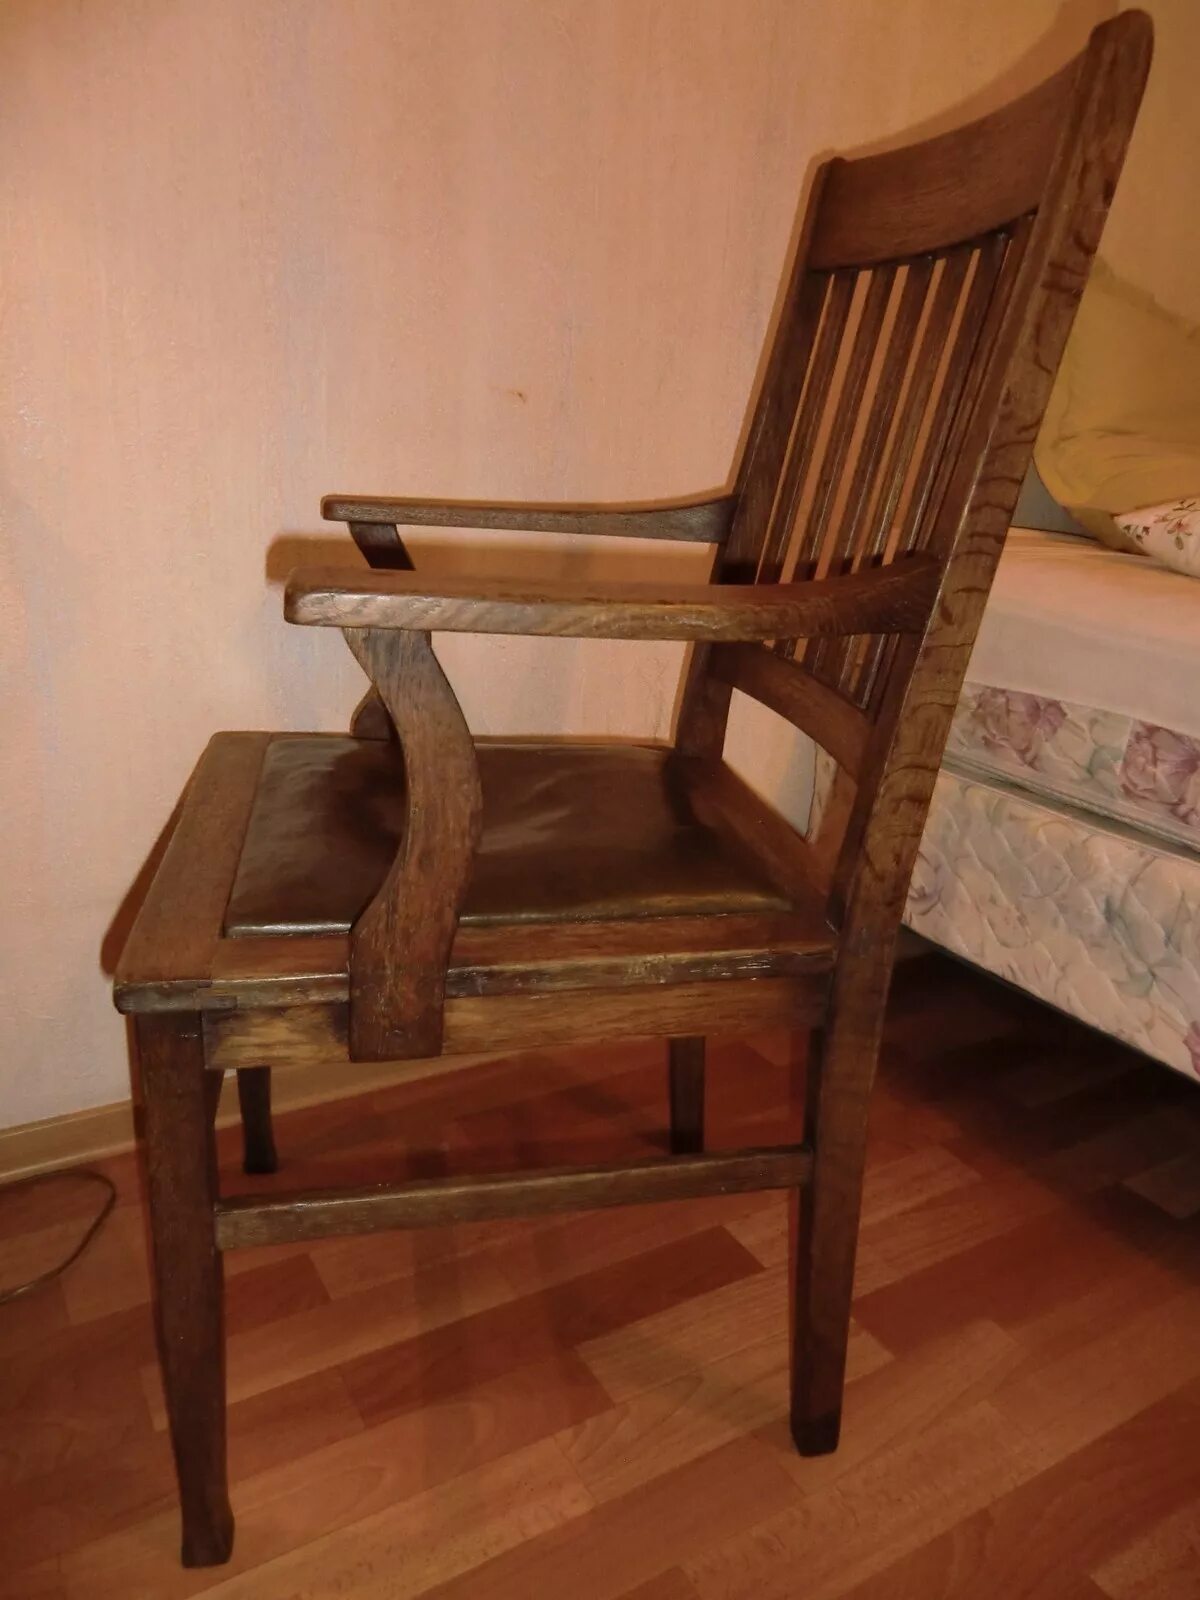 Мебель 20 века. Старинный стул с подлокотниками. Стулья старинные деревянные. Старый деревянный стул с подлокотниками. Старинный дубовый стул.